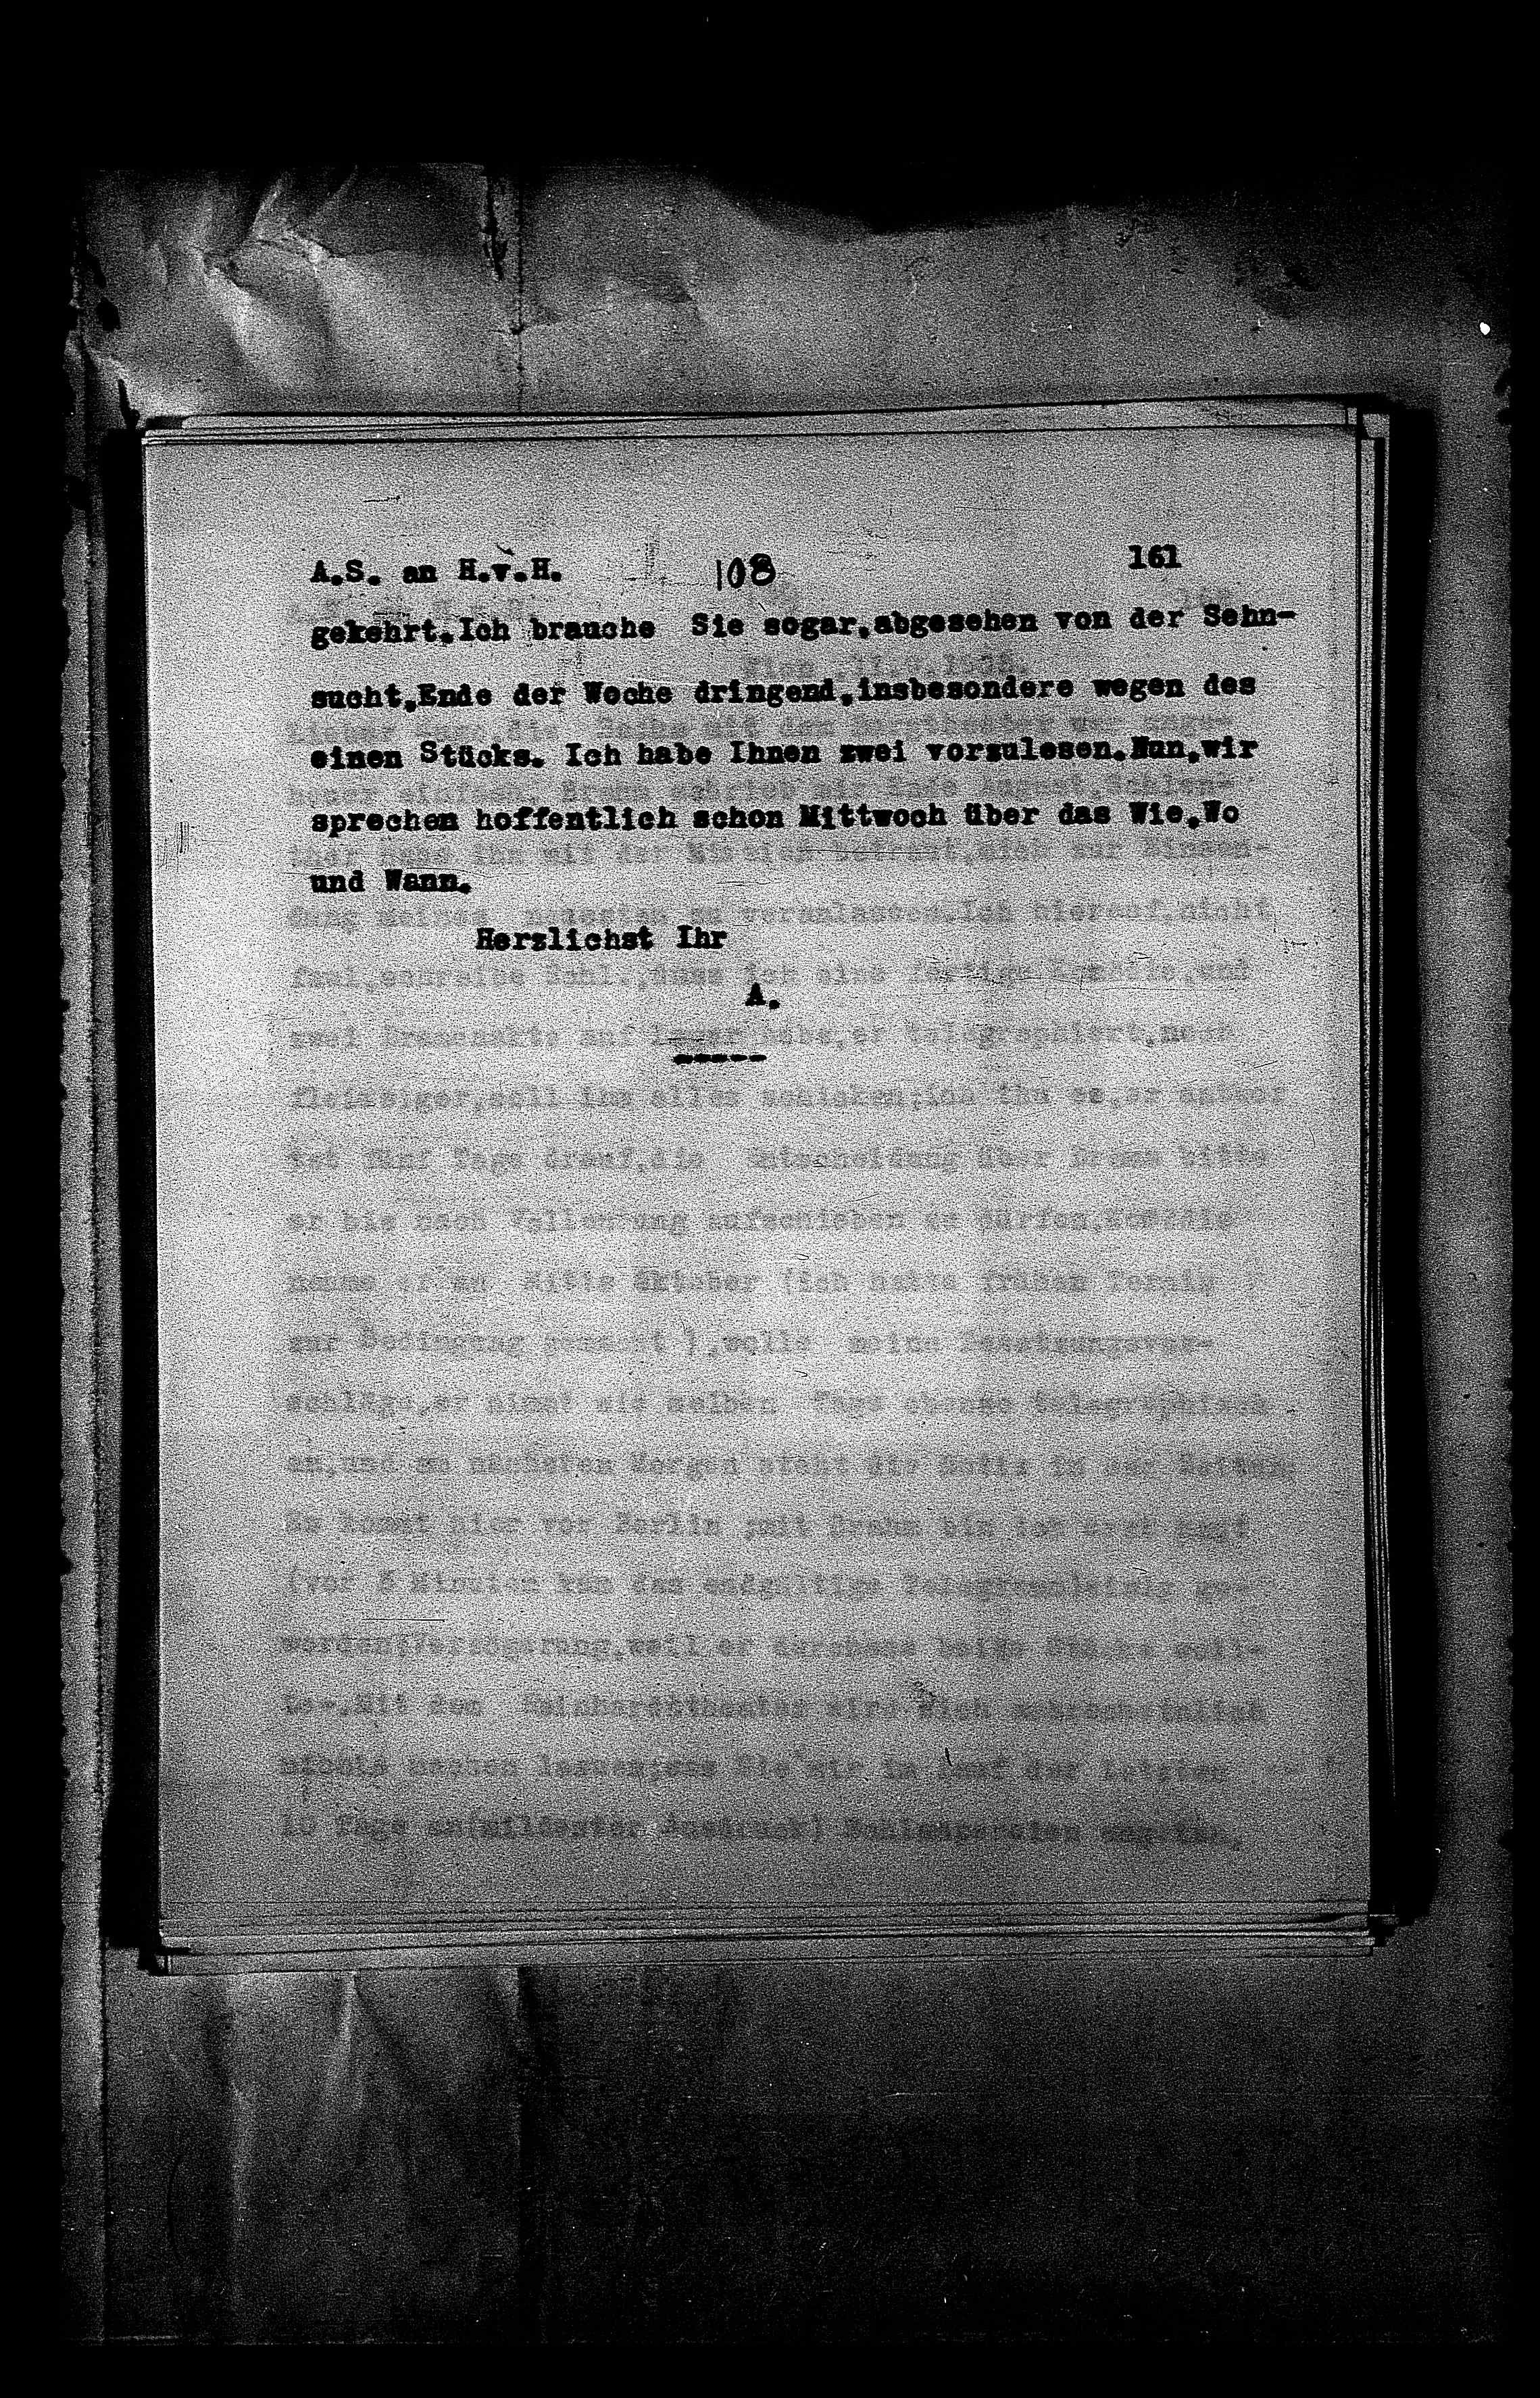 Vorschaubild für Hofmannsthal, Hugo von_AS an HvH Abschrift, HvH an AS, Originale (Mikrofilm 38), Seite 167